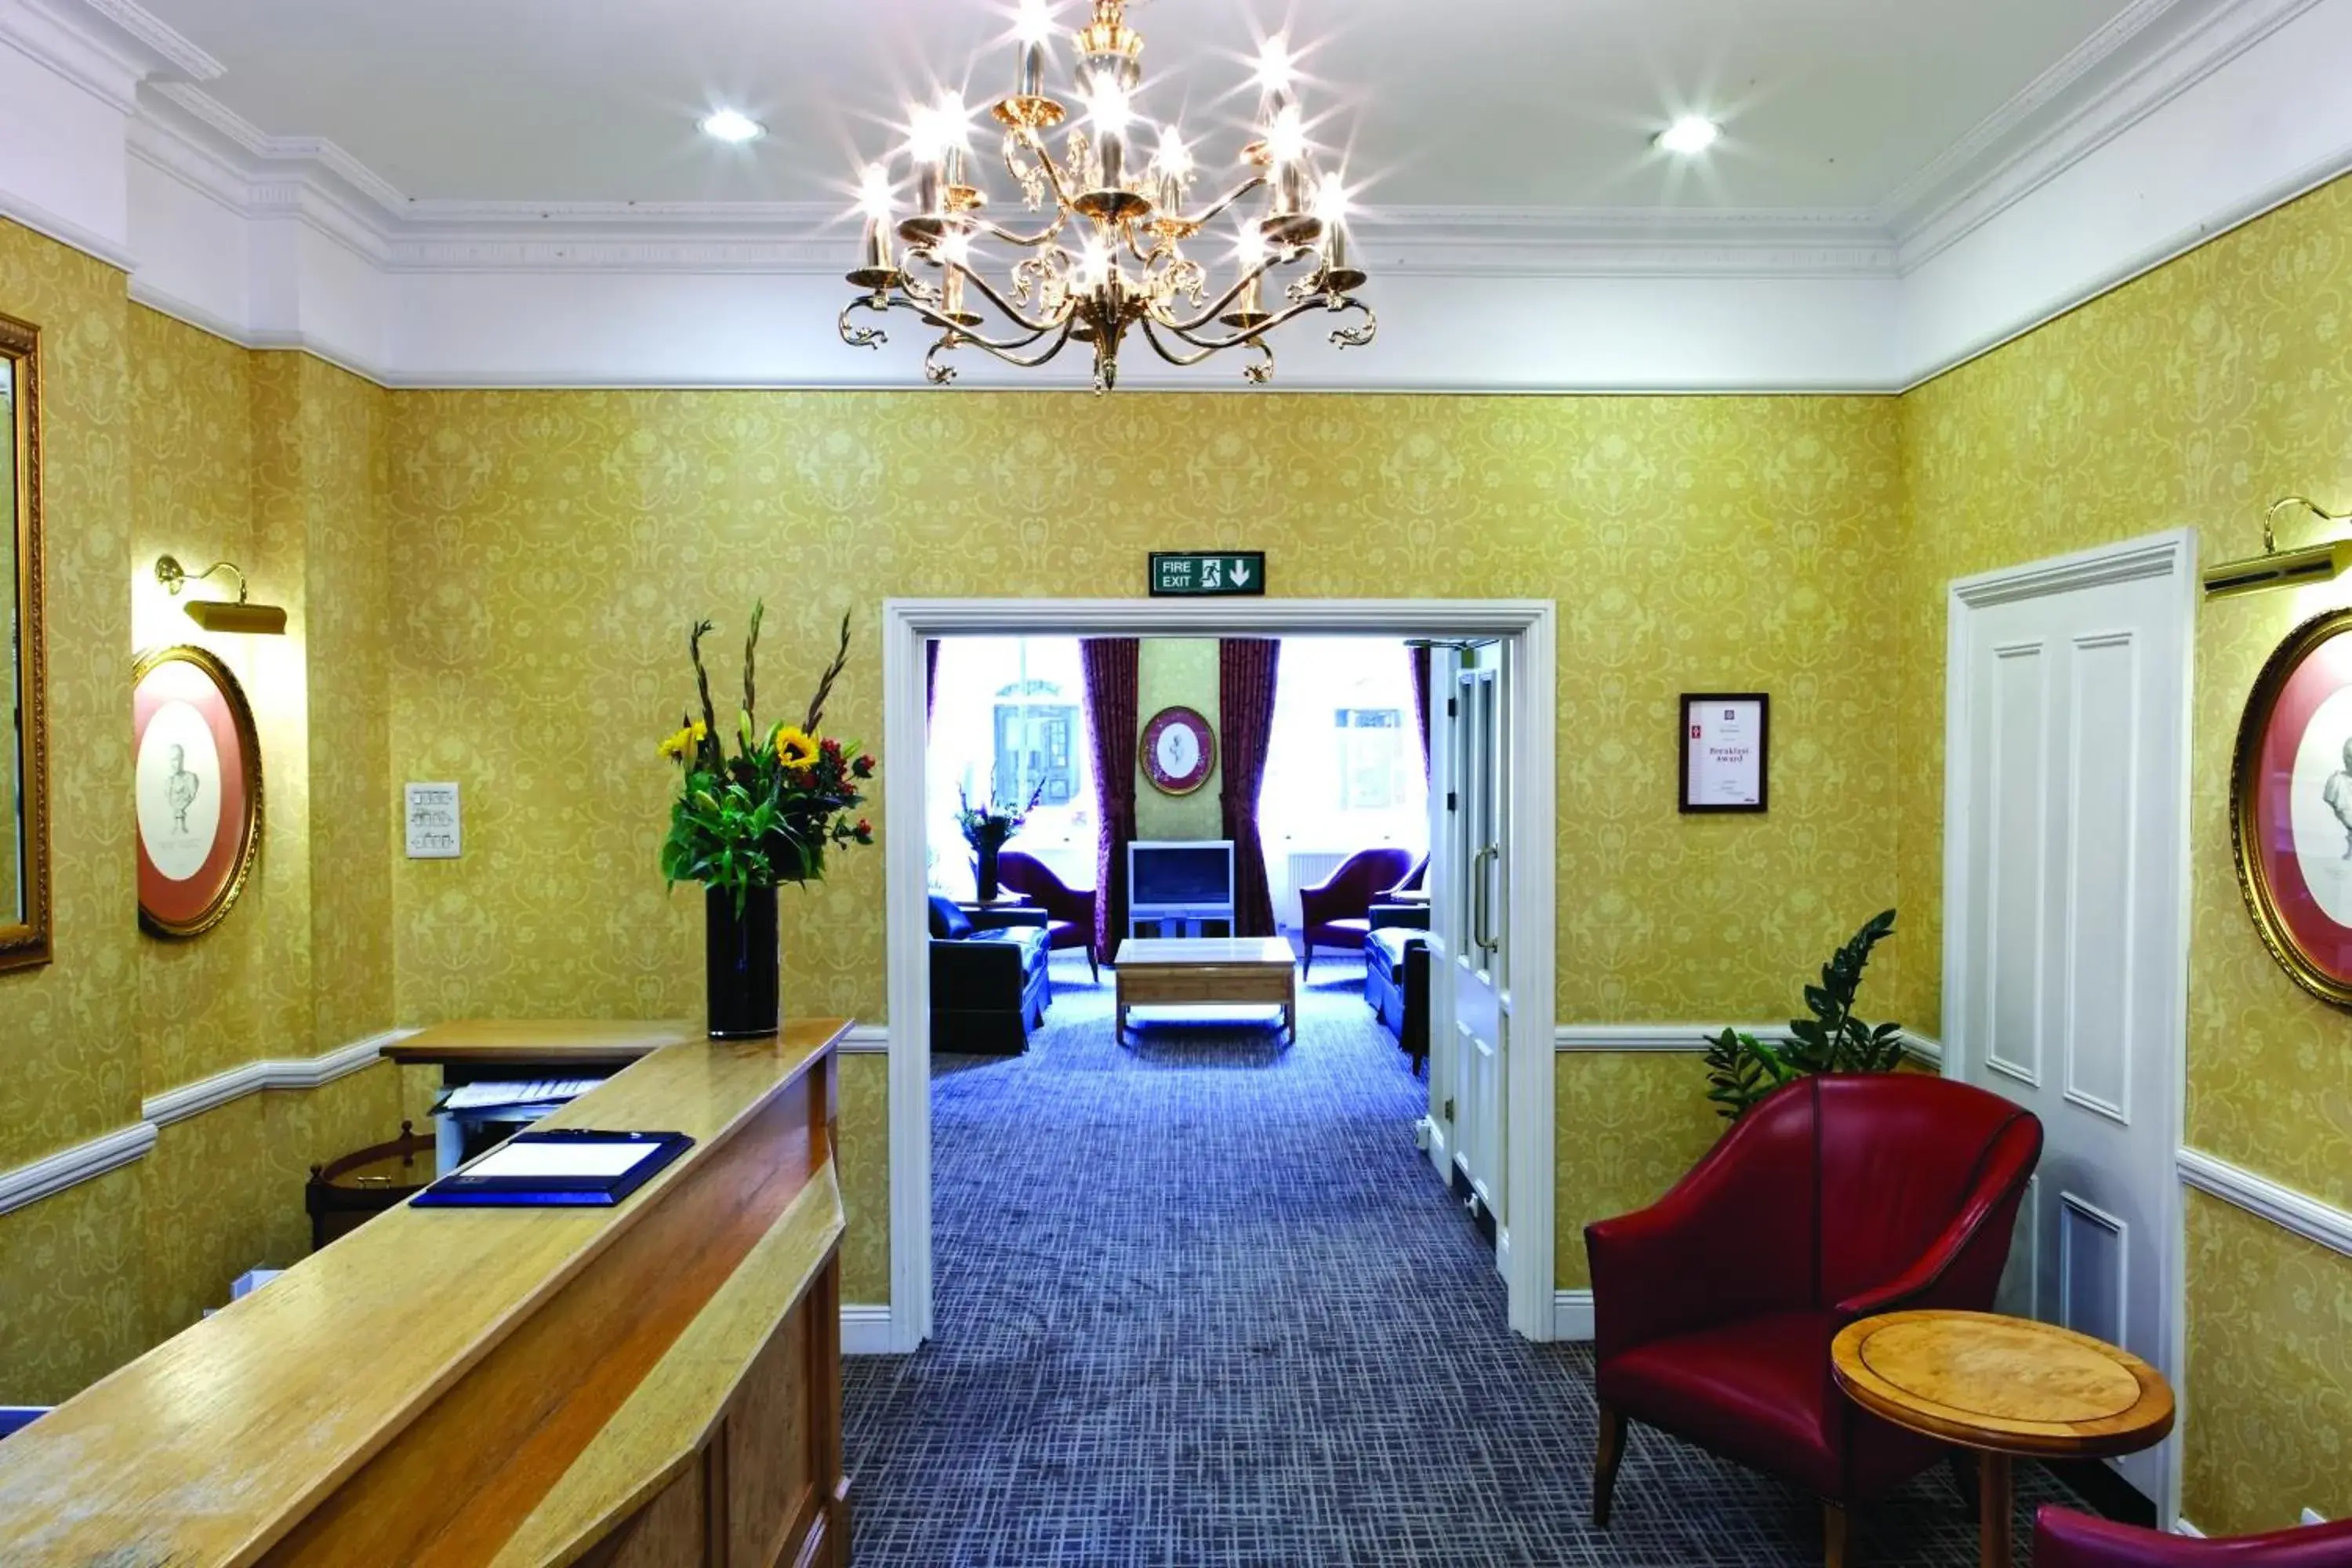 Lobby or reception in Grange Portland Hotel